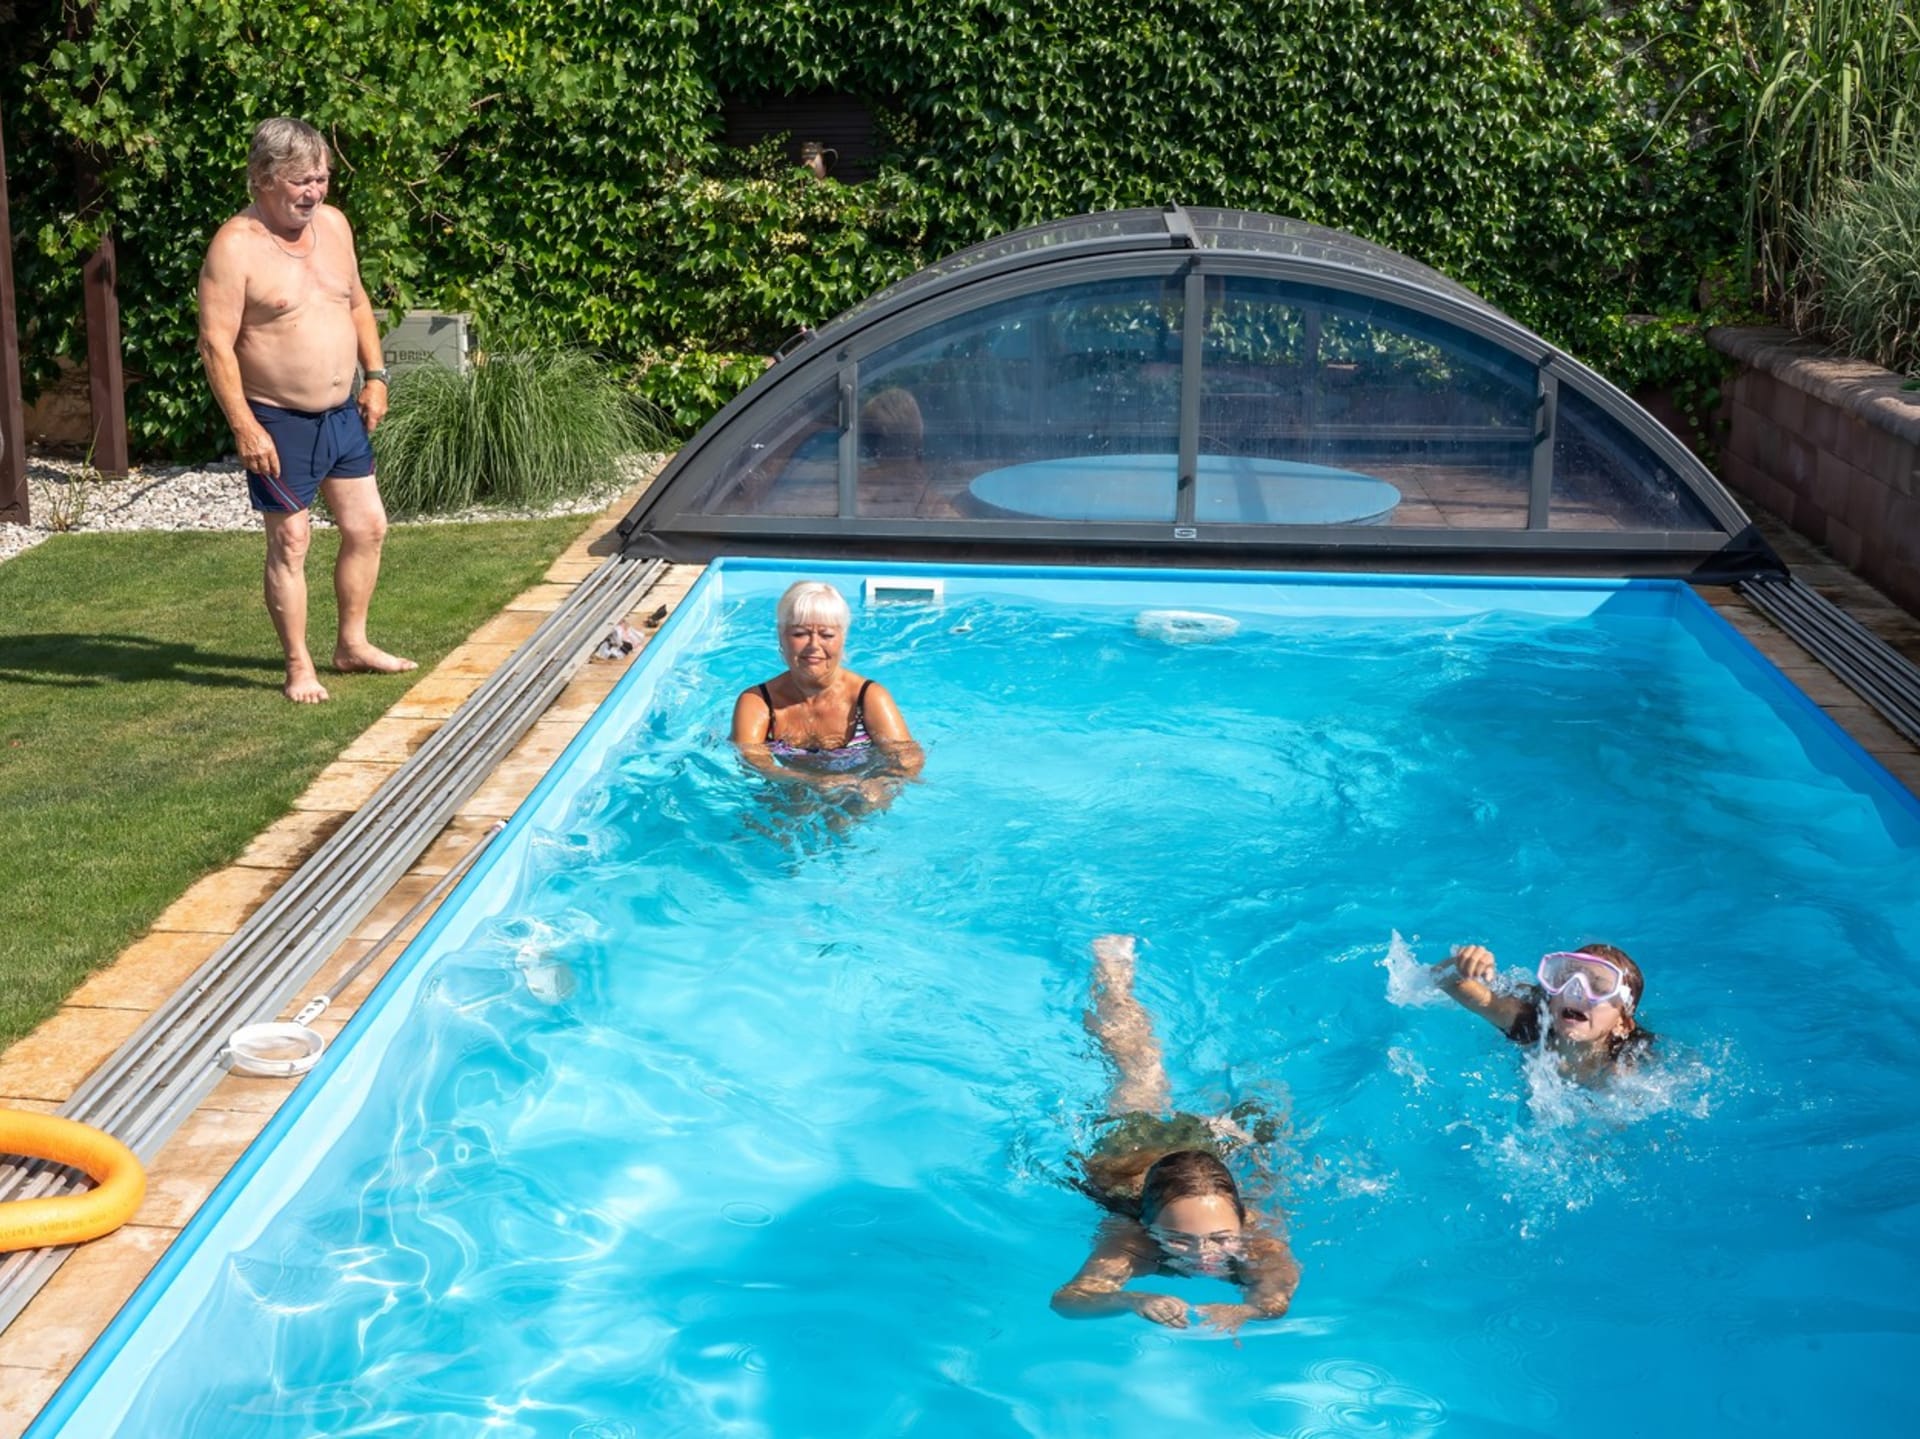 Bazén, který si nechali vybudovat na zahradě, představuje ráj pro celou rodinu. 